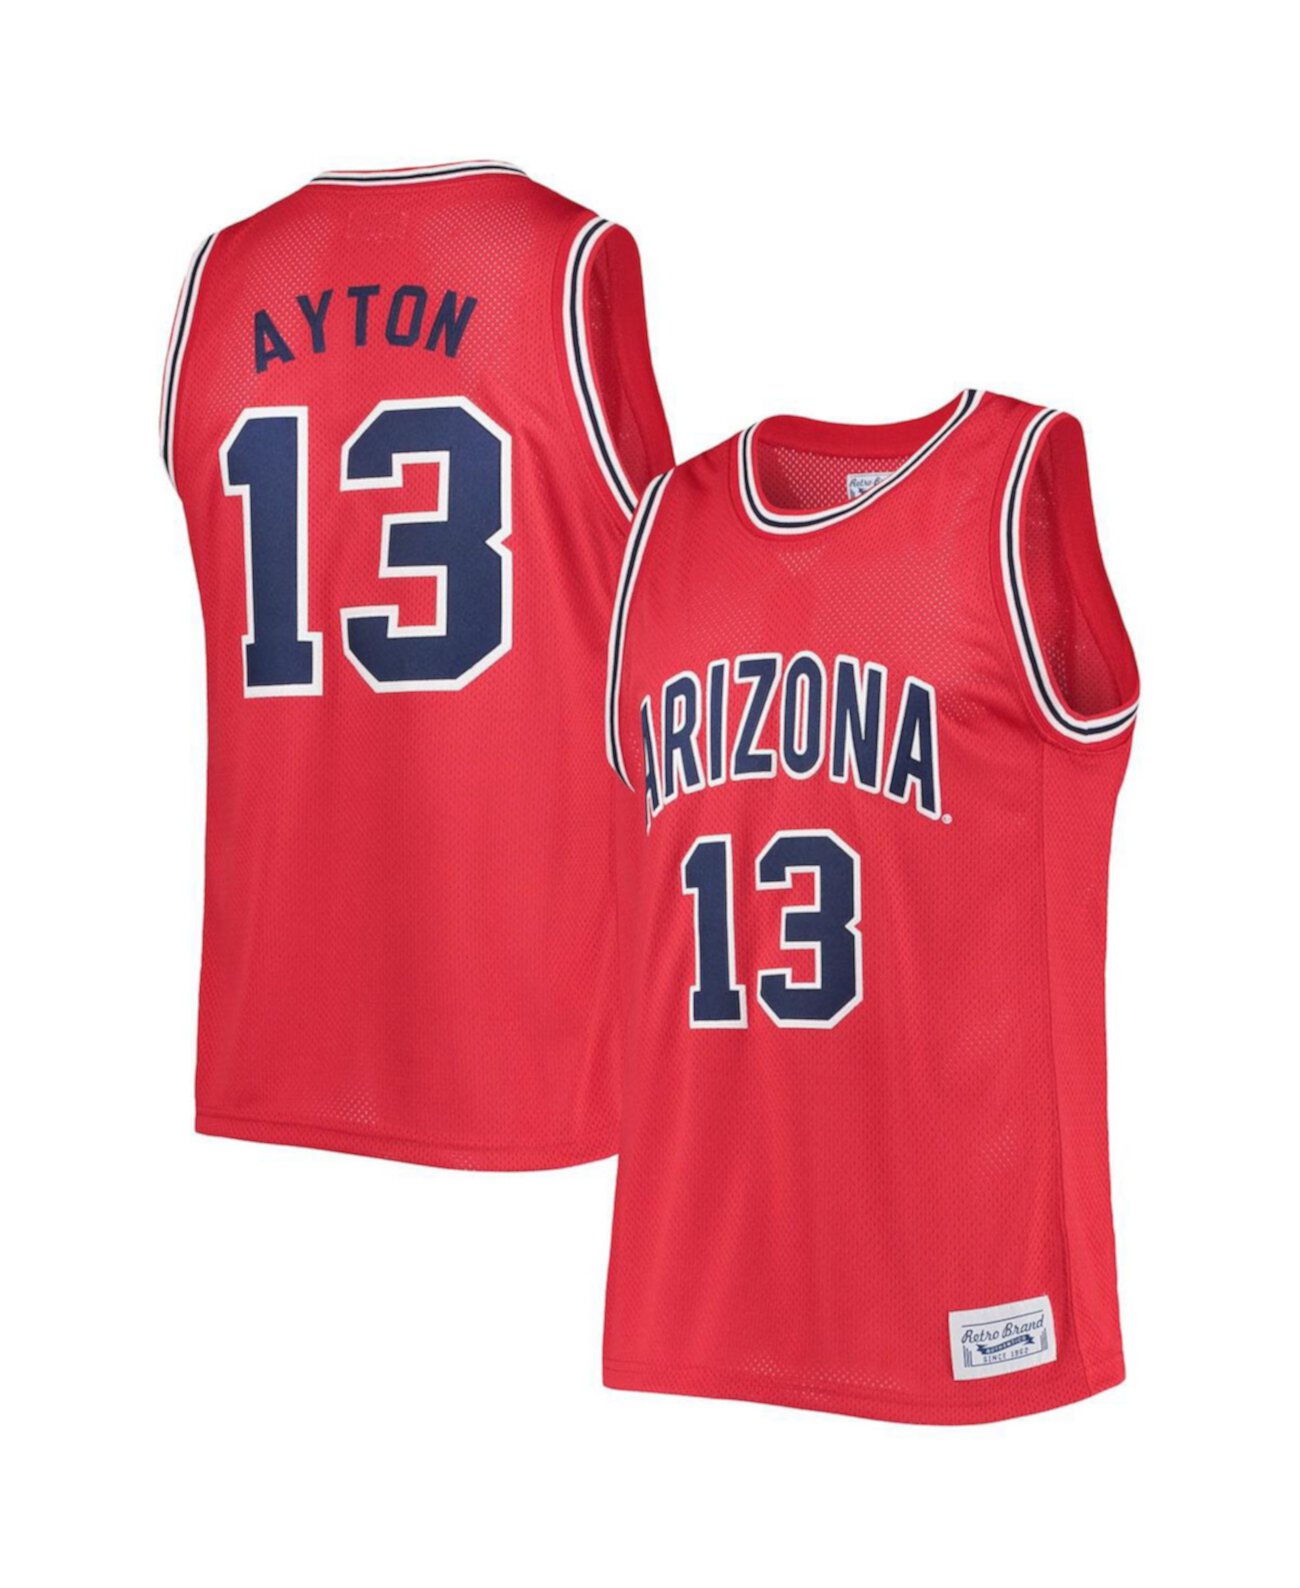 Мужская классическая памятная баскетбольная майка Deandre Ayton Red Arizona Wildcats Original Retro Brand